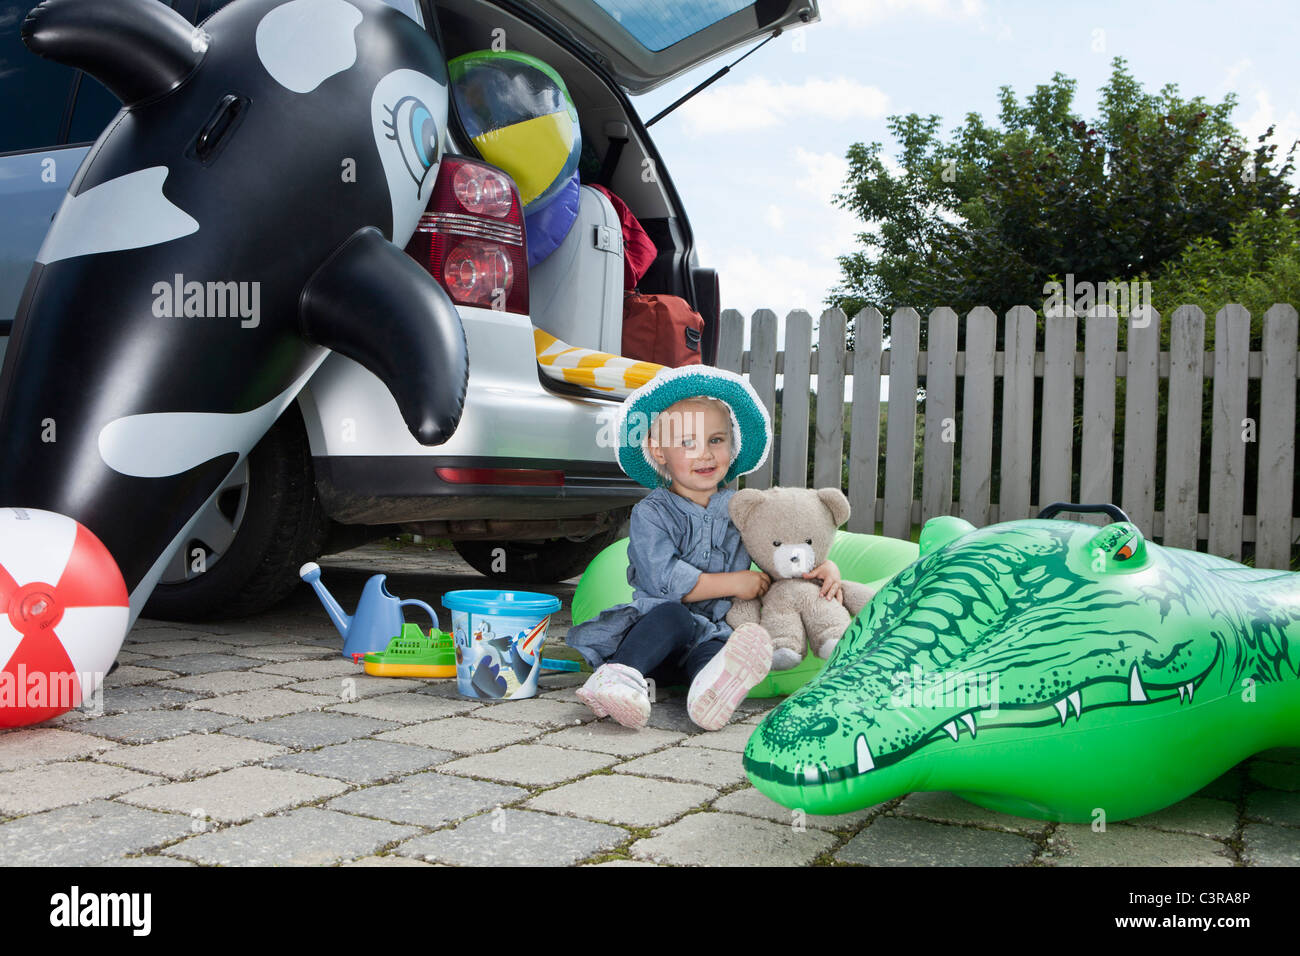 Alemania, Munich, Niña (2-3 años) que sujetan el juguete blando y sentado detrás de coches Foto de stock